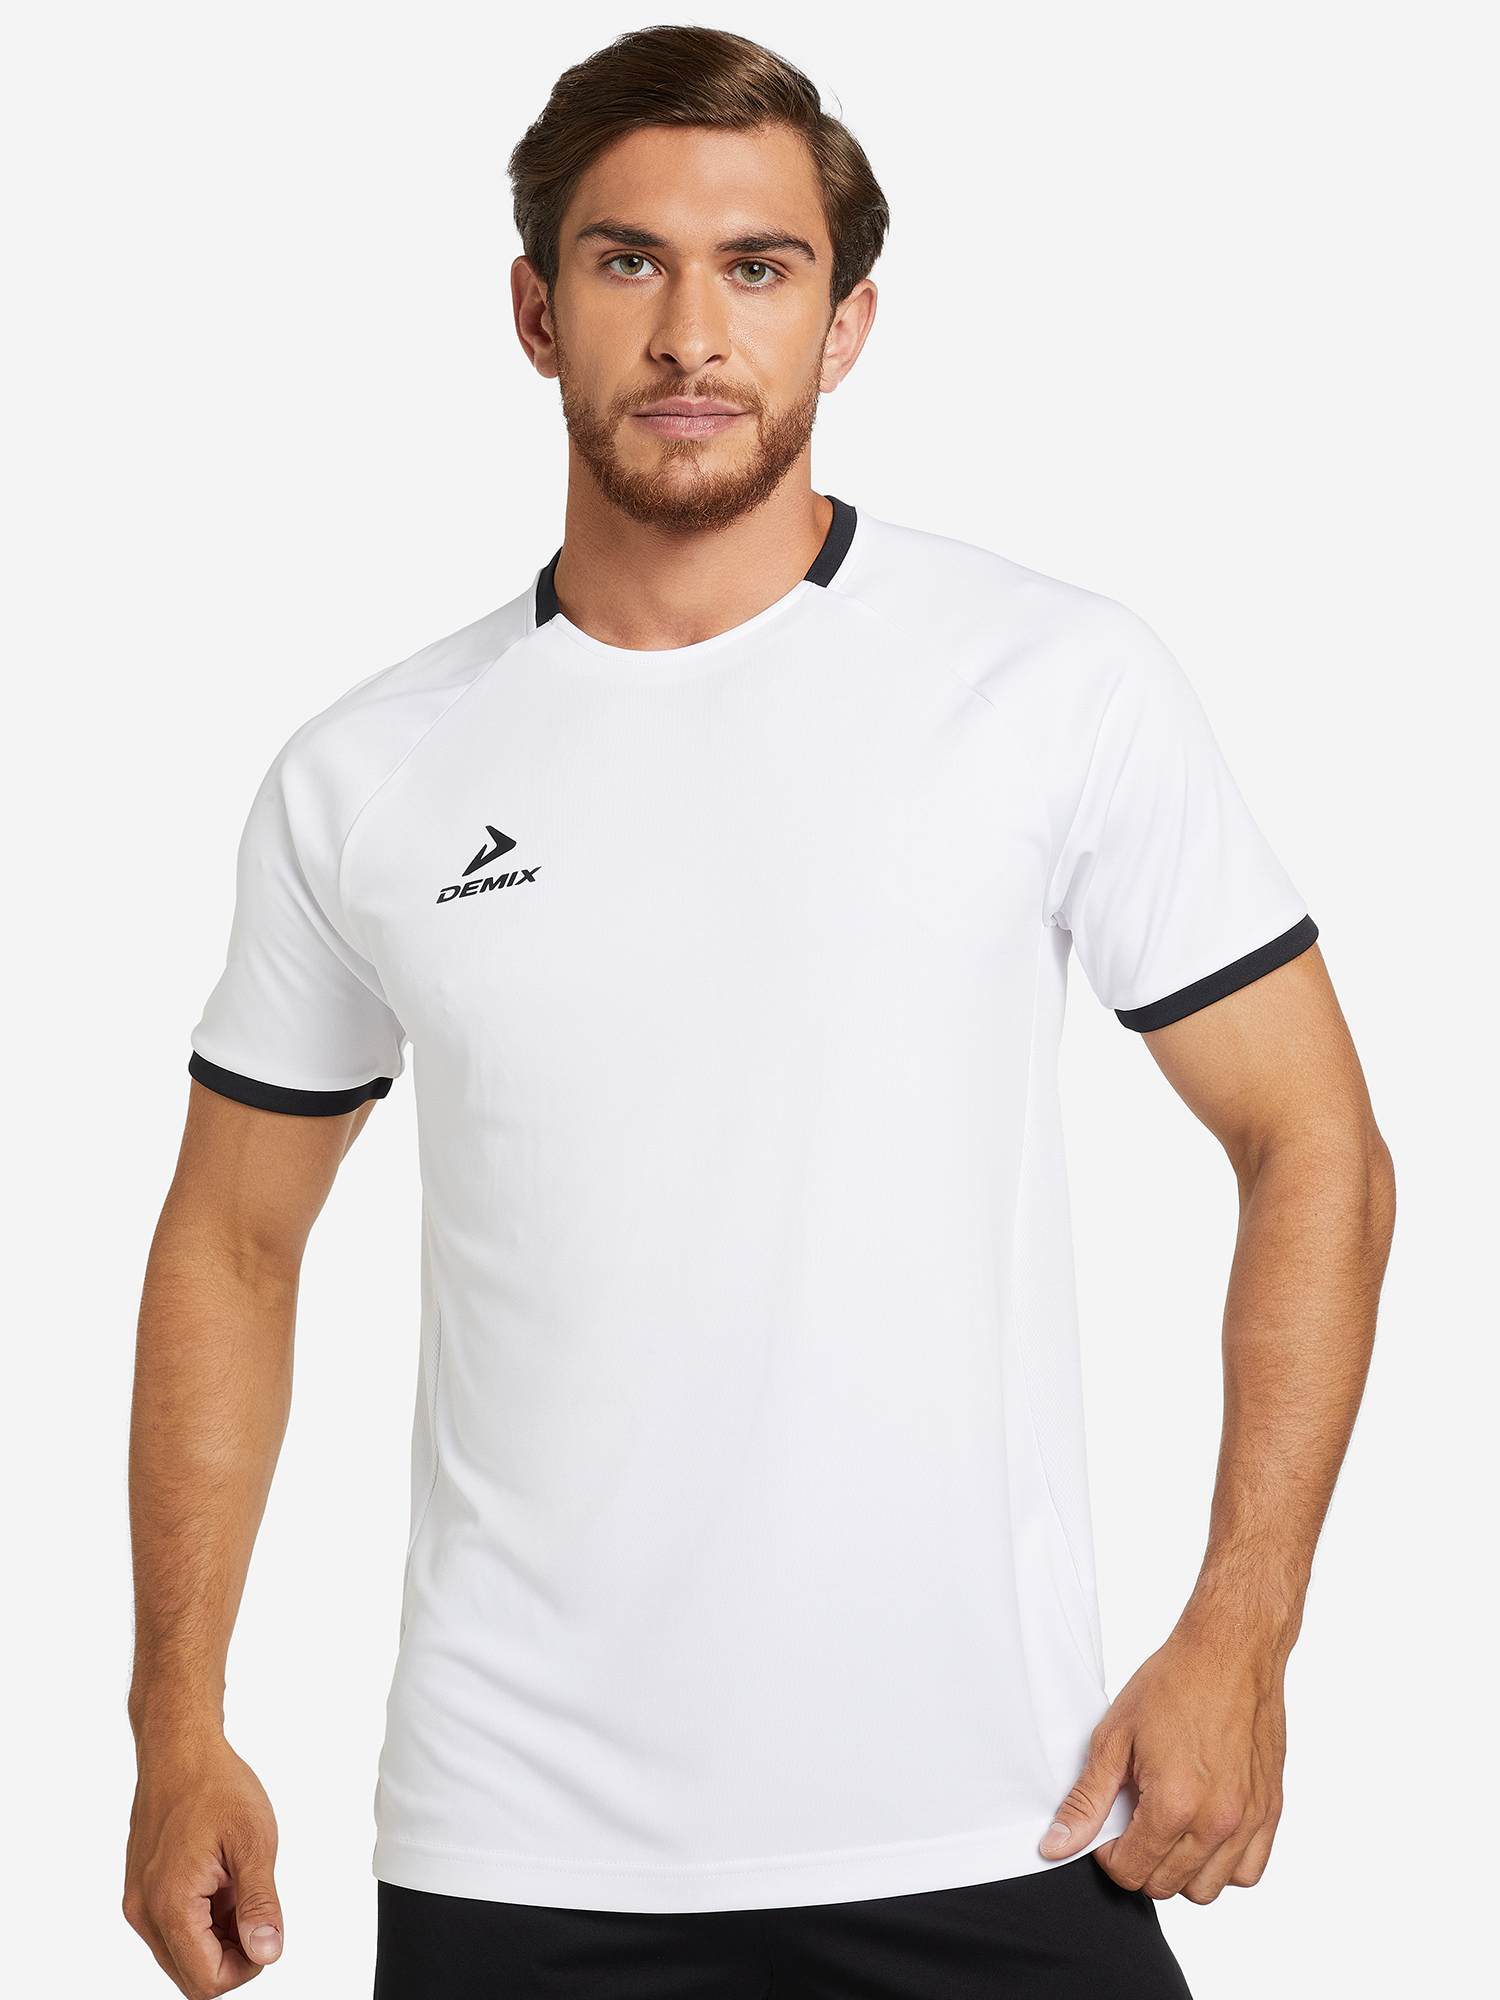 Футболка мужская Demix Division, Белый футболка мужская demix белый